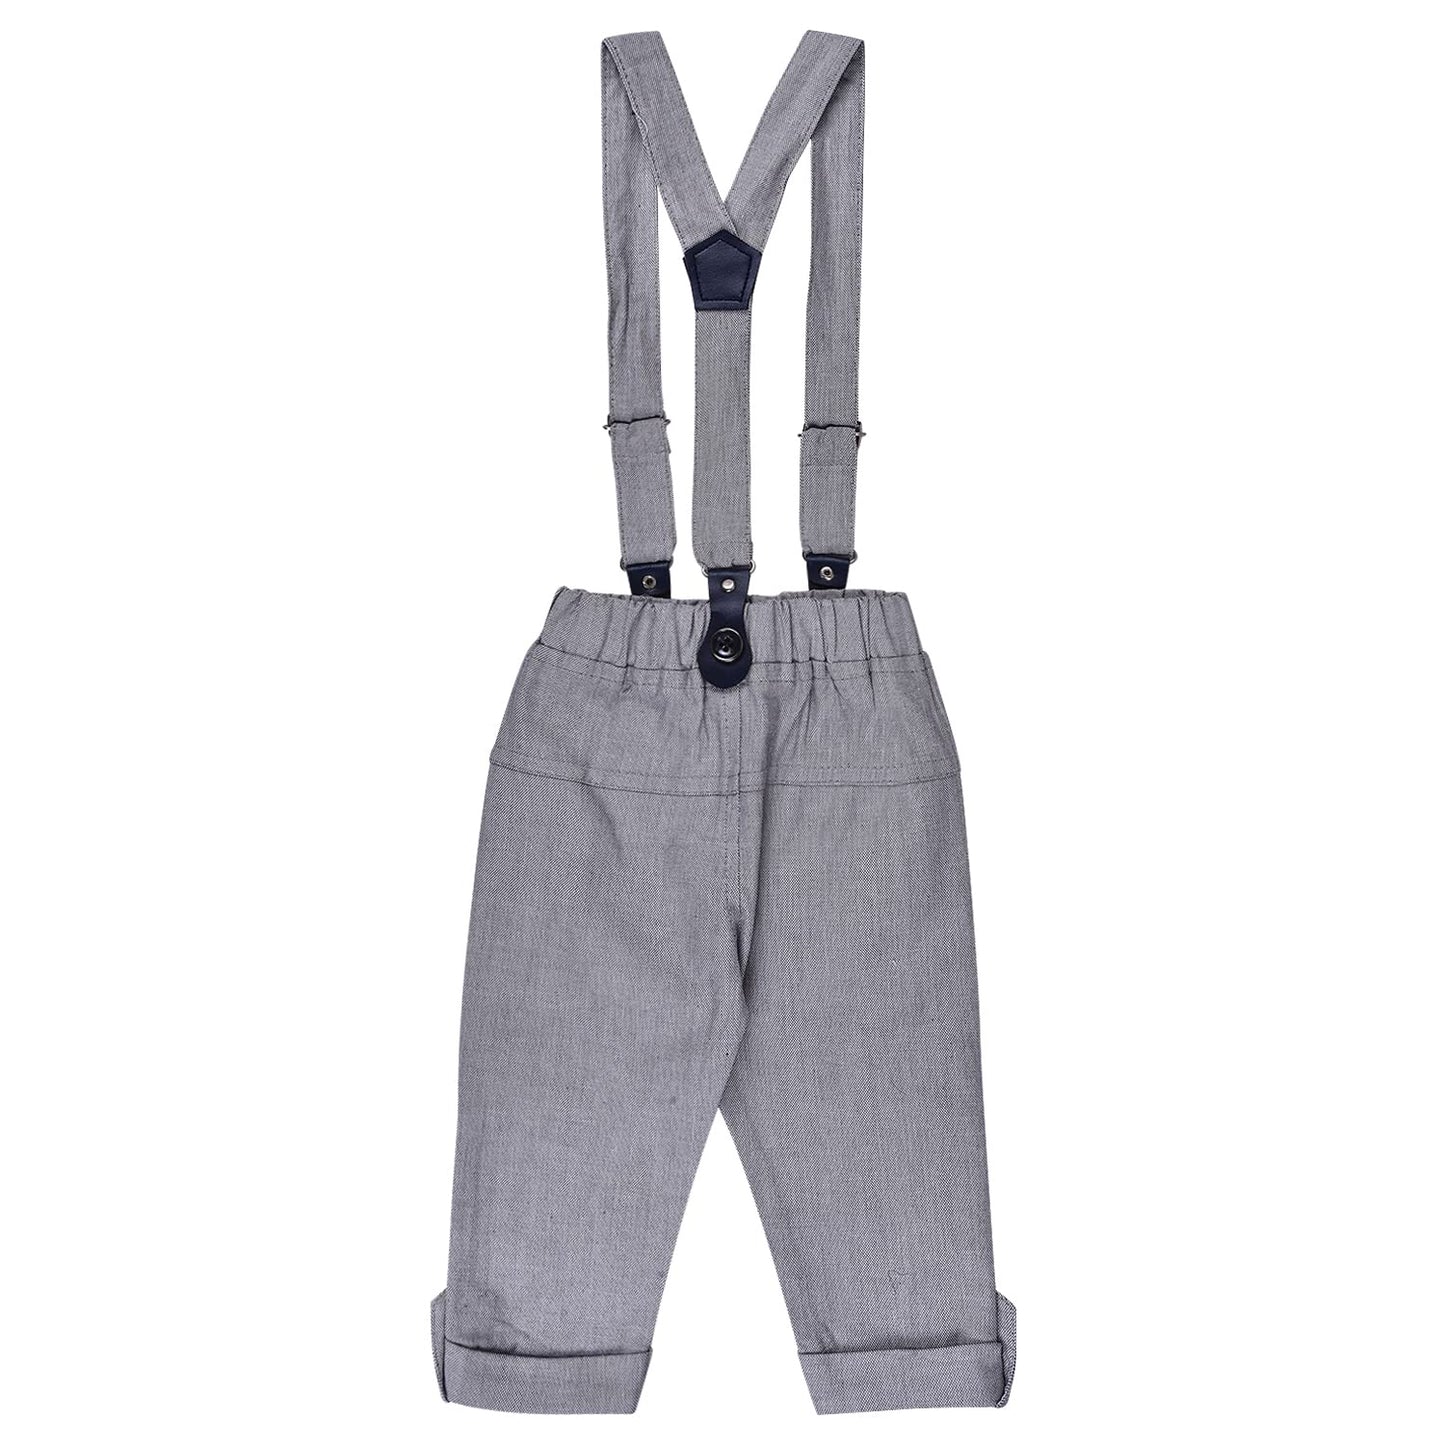 Wish Karo Baby Boys Shirt And Pants For Boys-(bt101wht)